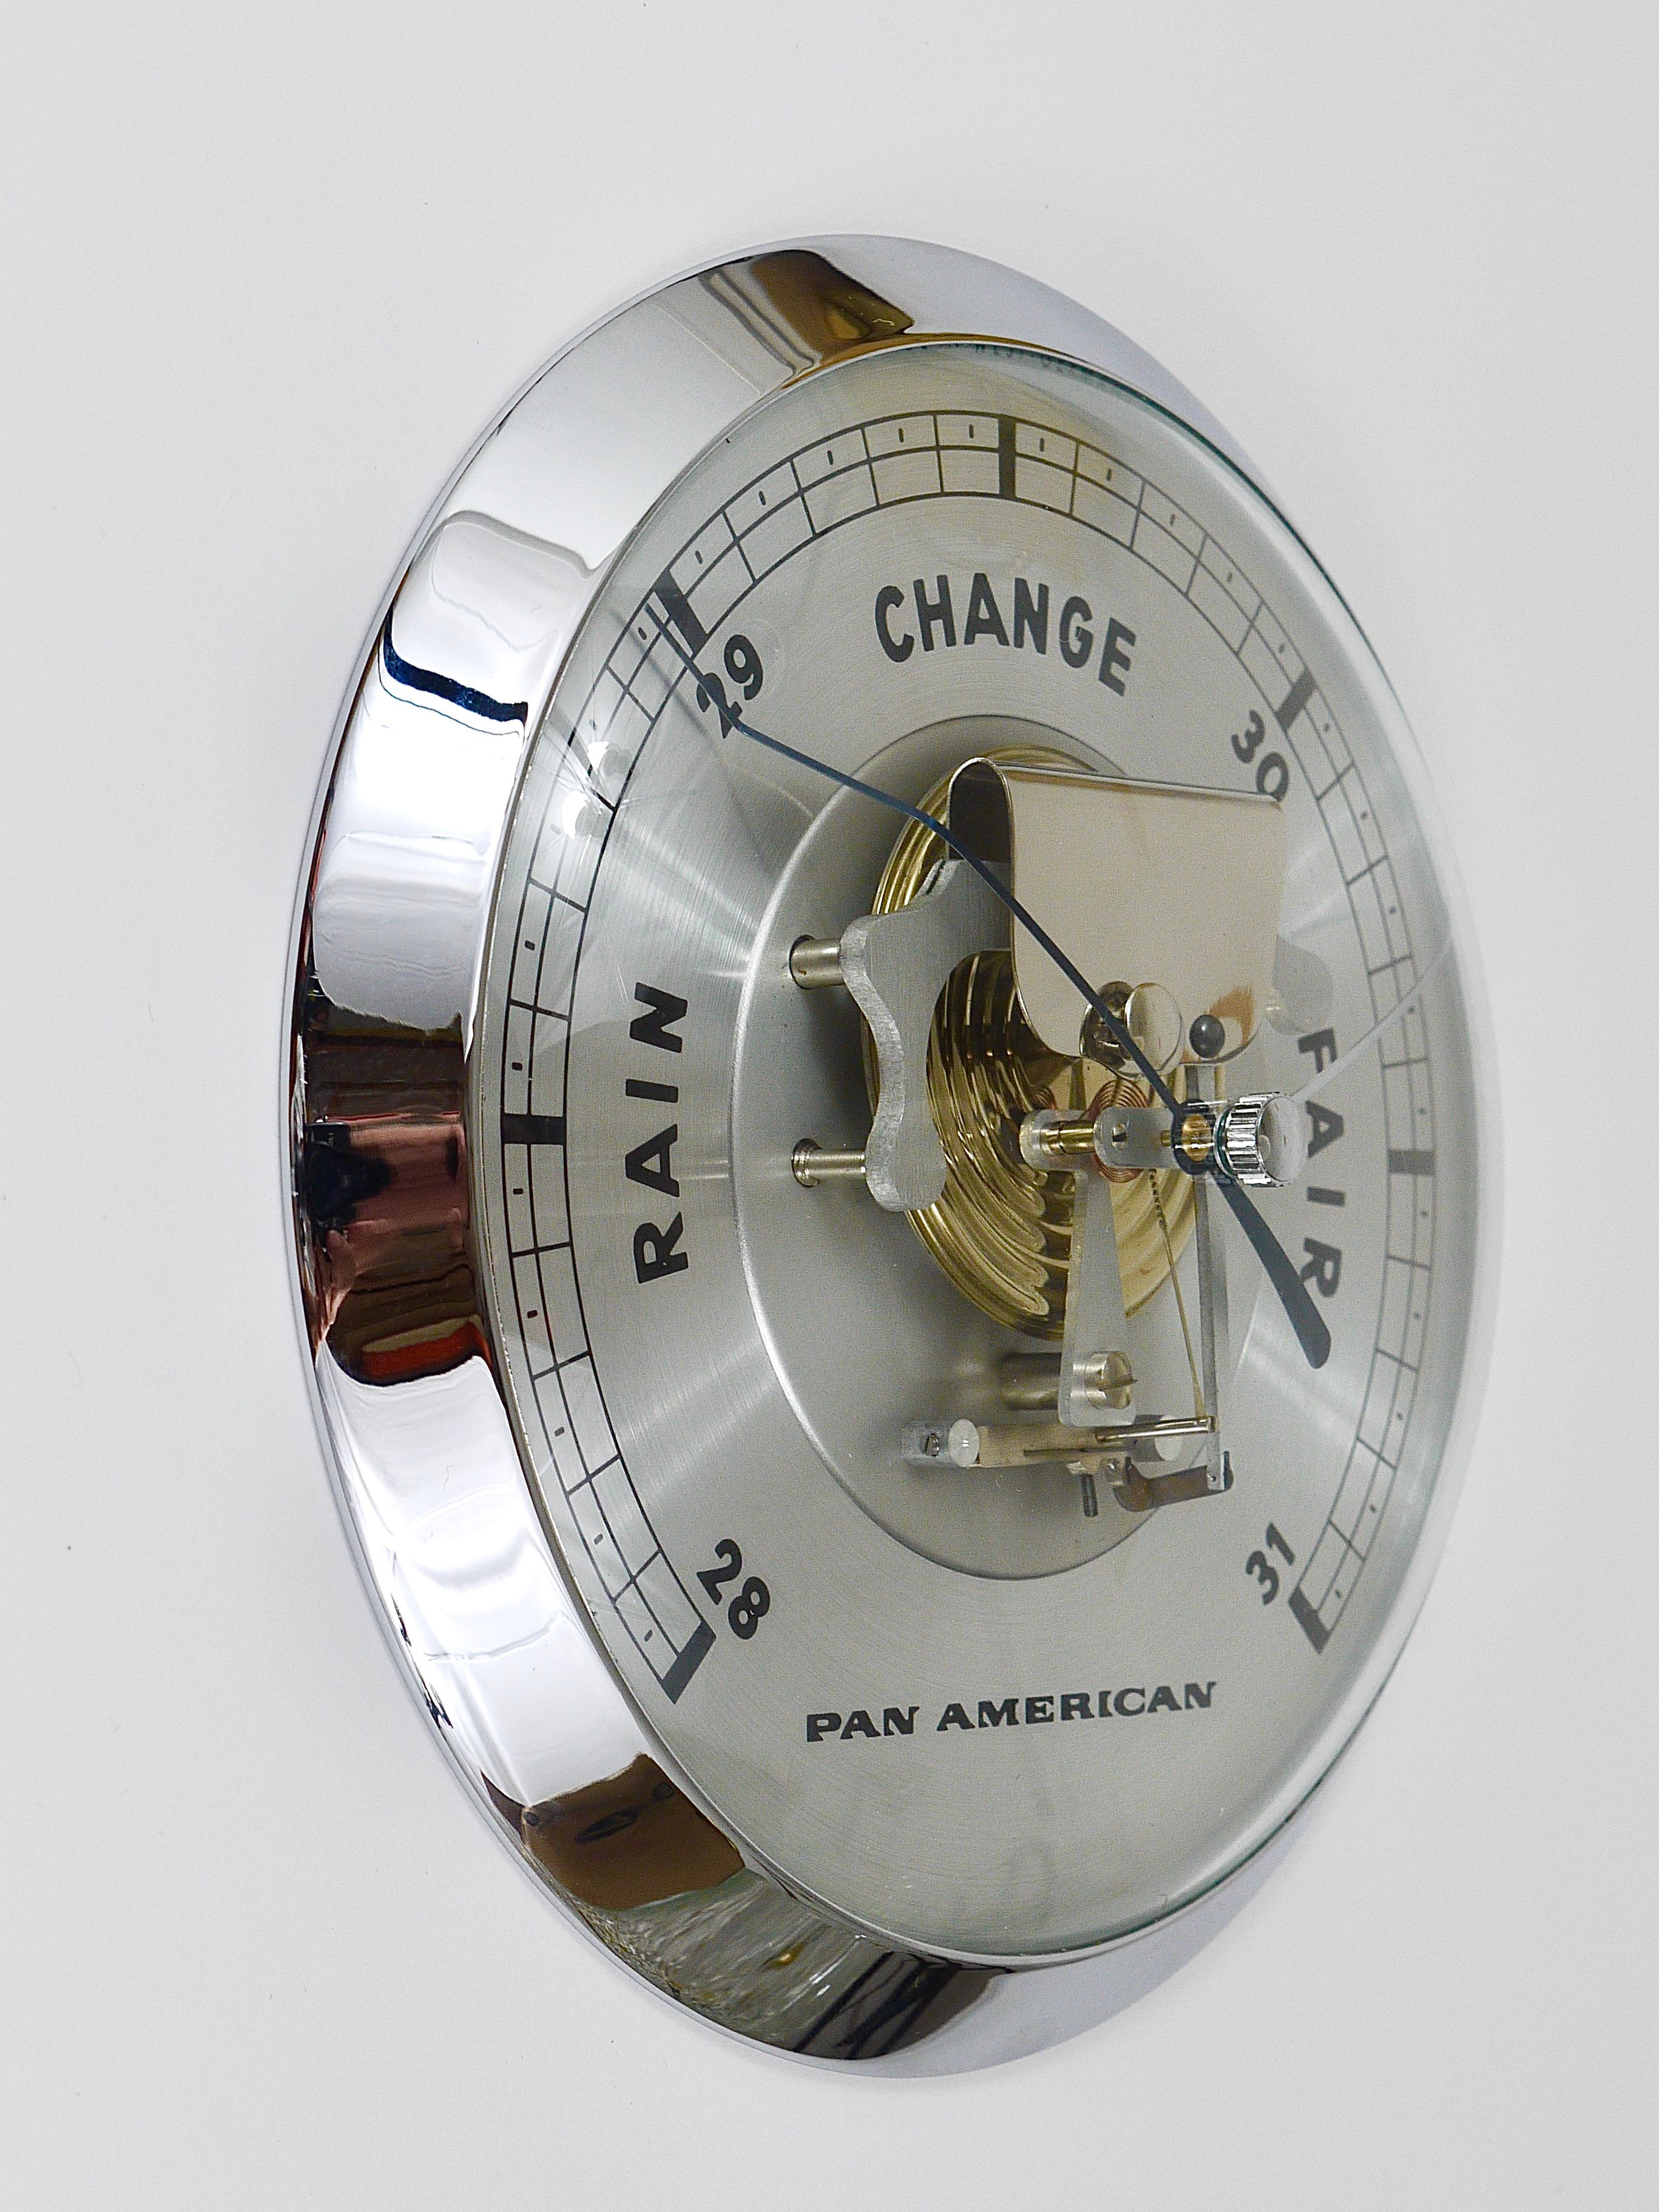 Ein rundes und großes Wandbarometer / Wetterstation aus der Mitte des Jahrhunderts von der Fluggesellschaft PAA Pan American World Airways. Datiert auf die 1960er Jahre.  Ein Qualitätsprodukt, hergestellt in Westdeutschland. Das schöne und